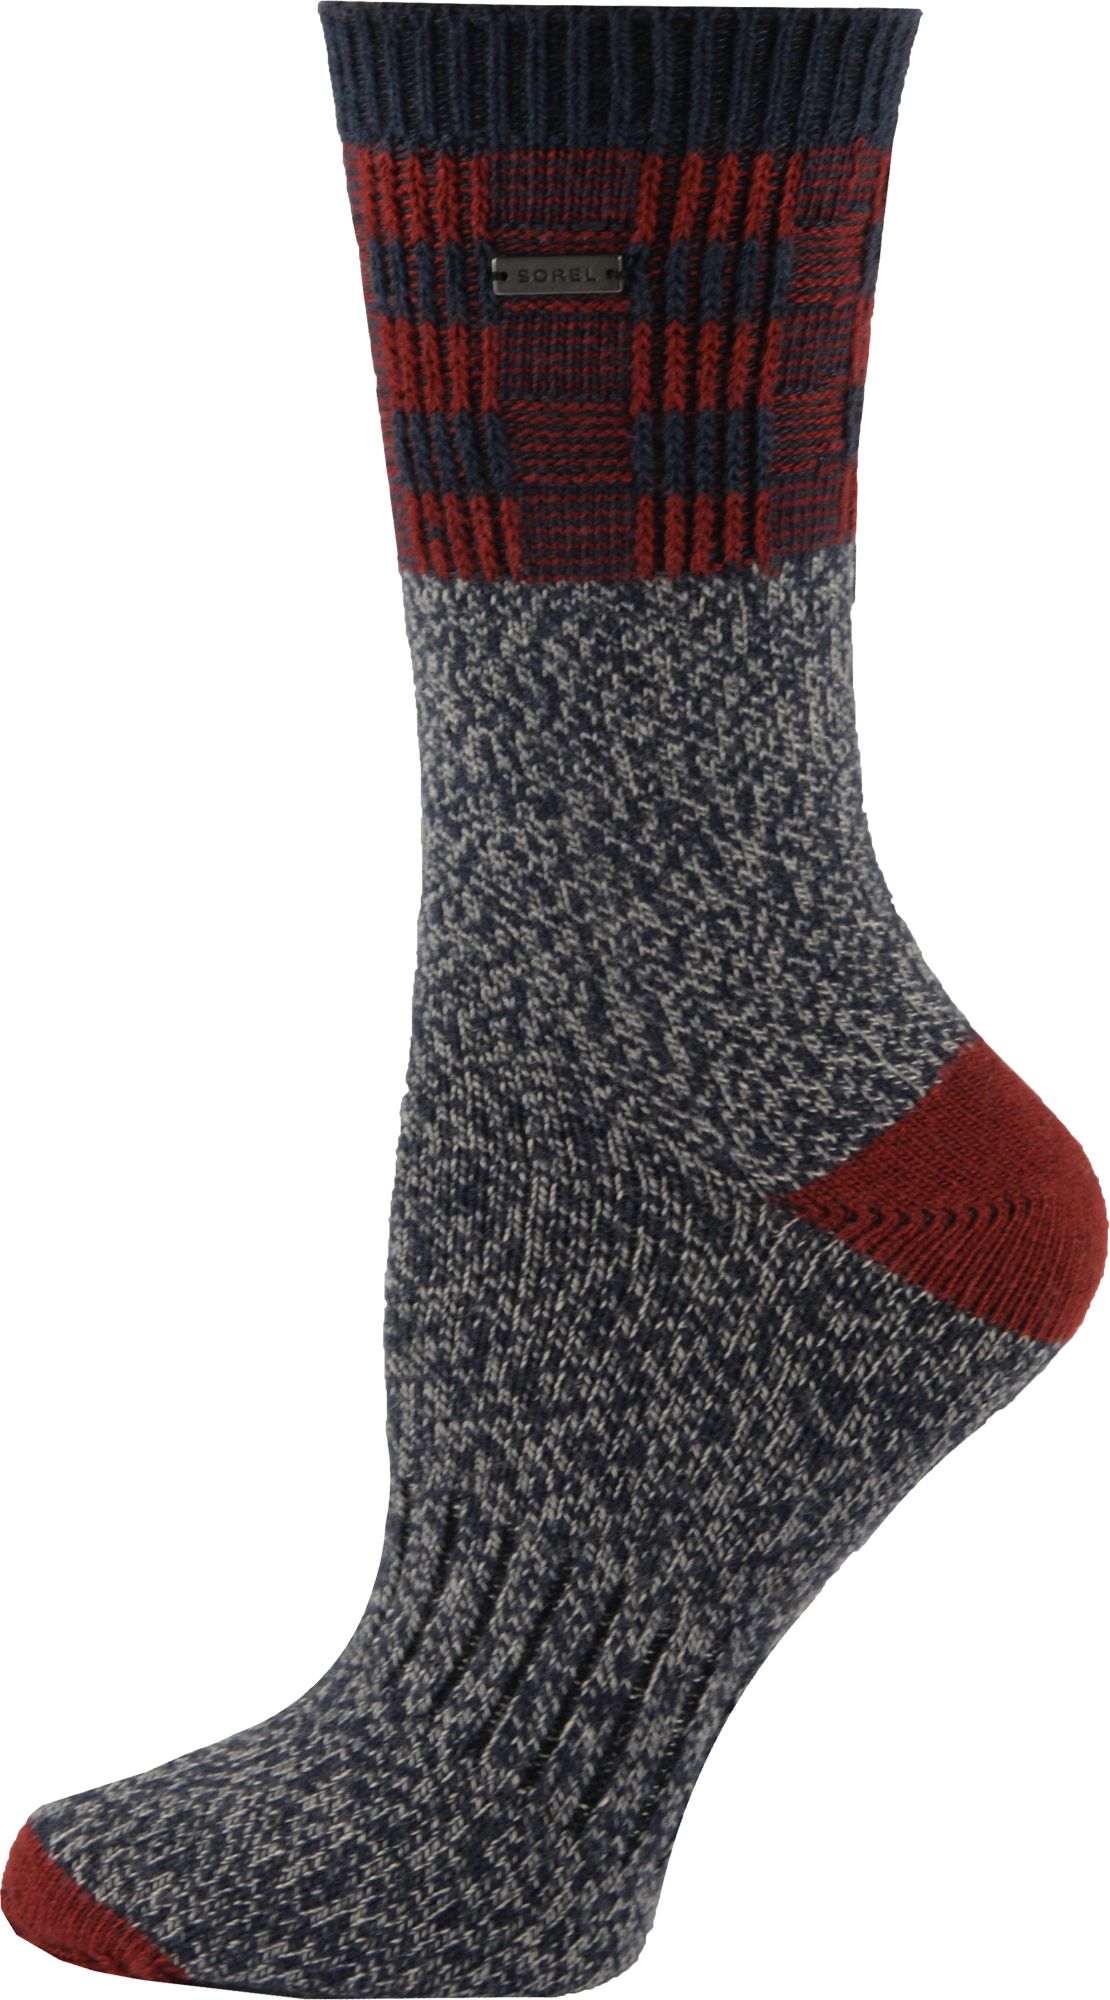 women's wool crew socks